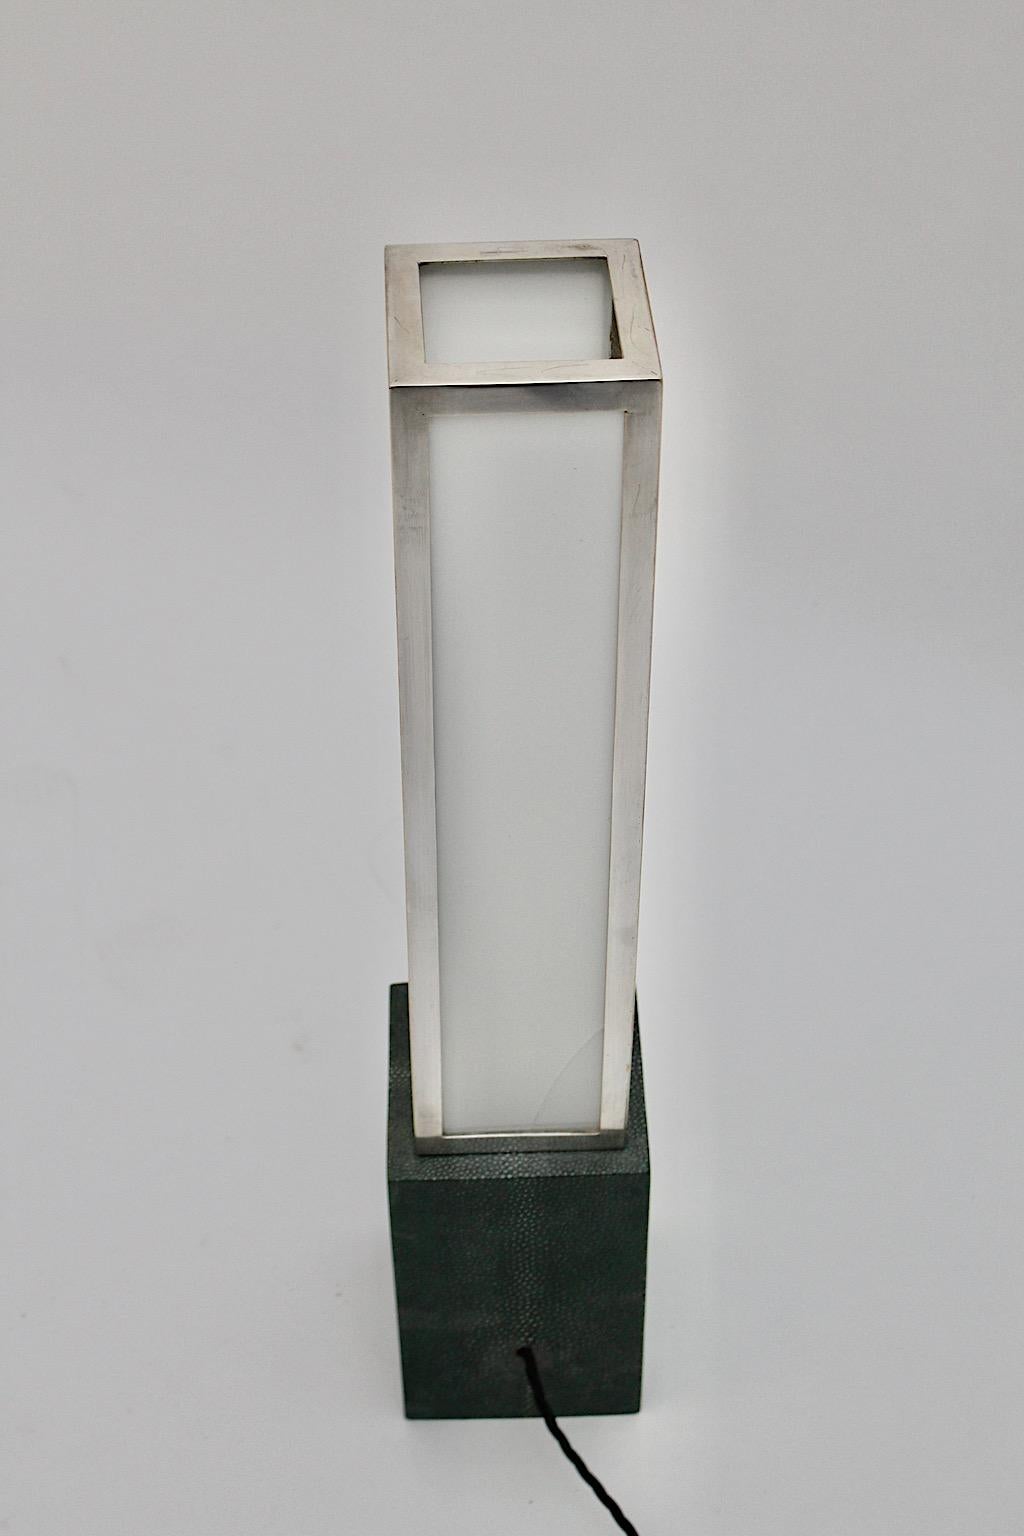 Lampe de table vintage Art of Vintage géométrique en plexiglas, laiton nickelé et cuir dans le style d'Eckart Muthesius dans les années 1920 en Allemagne.
Magnifique lampe de table Art Déco avec une base rectangulaire en cuir vert tandis que